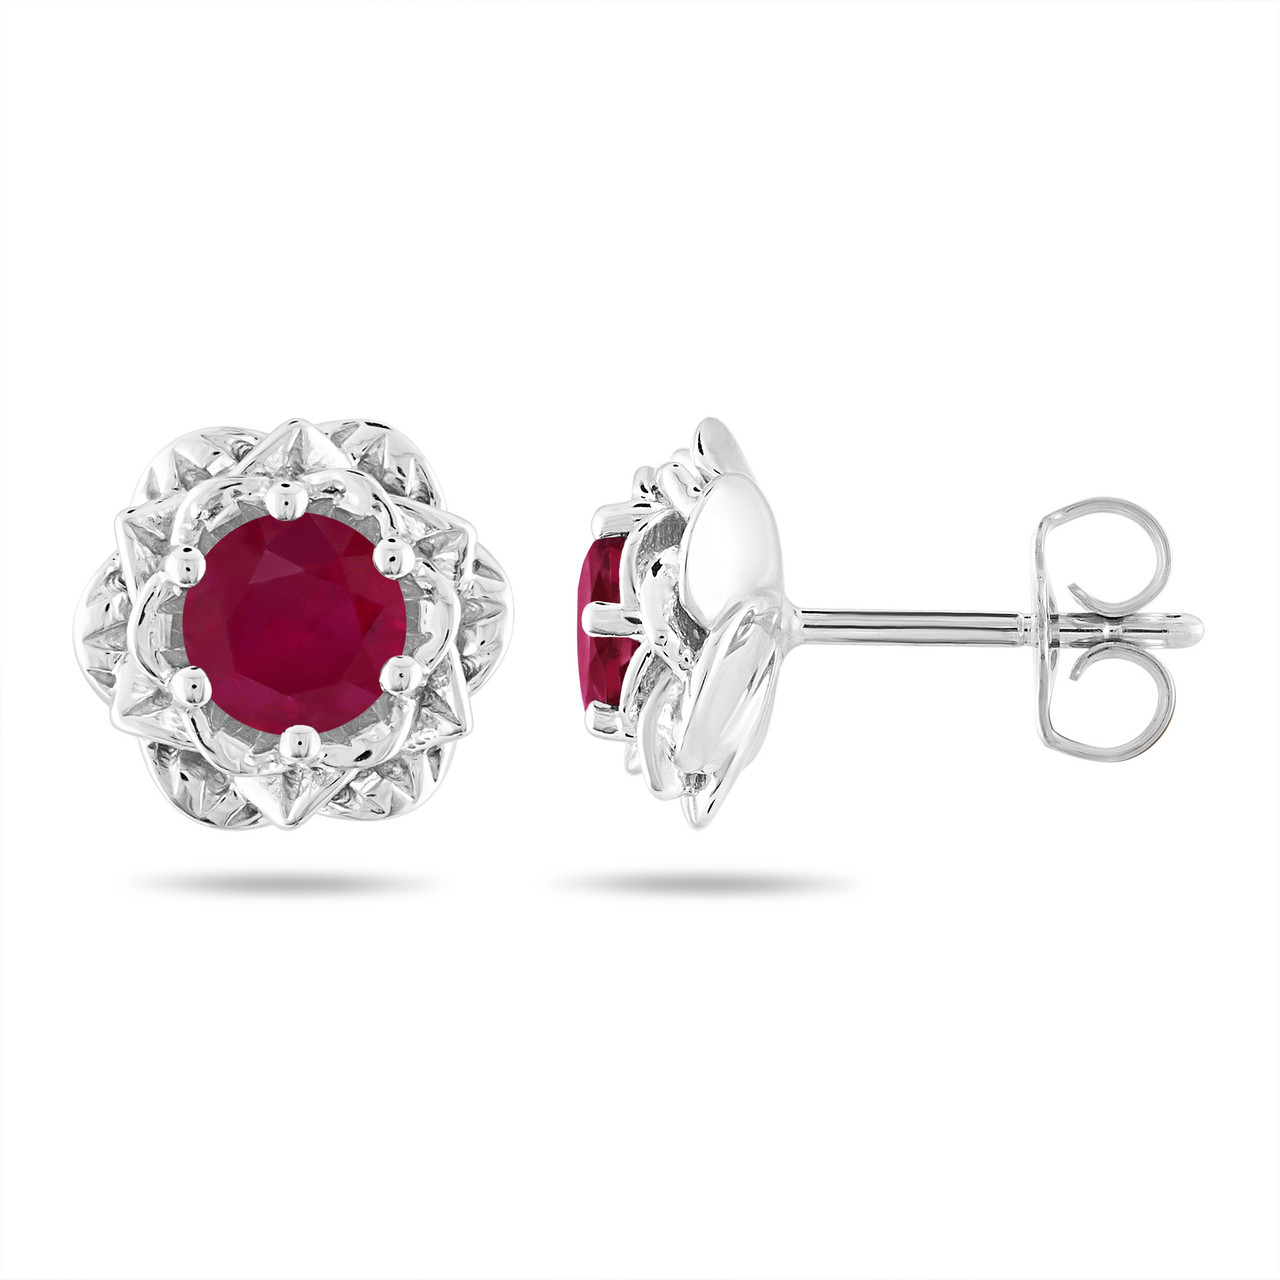 Buy 150+ Ruby Earrings Online | BlueStone.com - India's #1 Online Jewellery  Brand